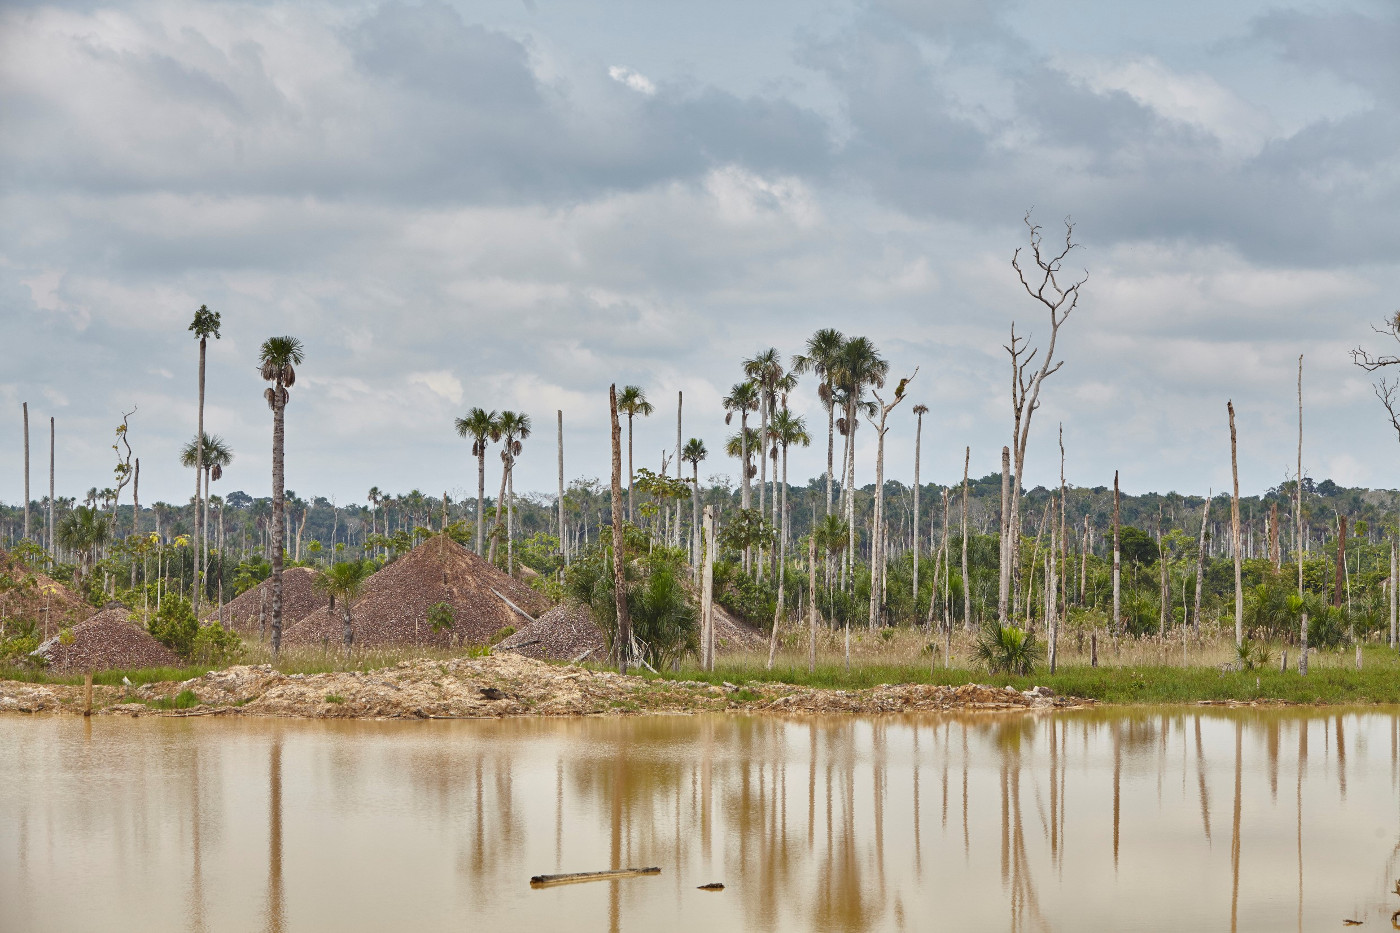 Der illegale Bergbau im Amazonasgebiet verseucht Wasser und Böden. Die Bäume rund um diese verlassene Goldgräberstelle in Peru sind abgestorben. Foto: Adveniat/Tina Umlauf 